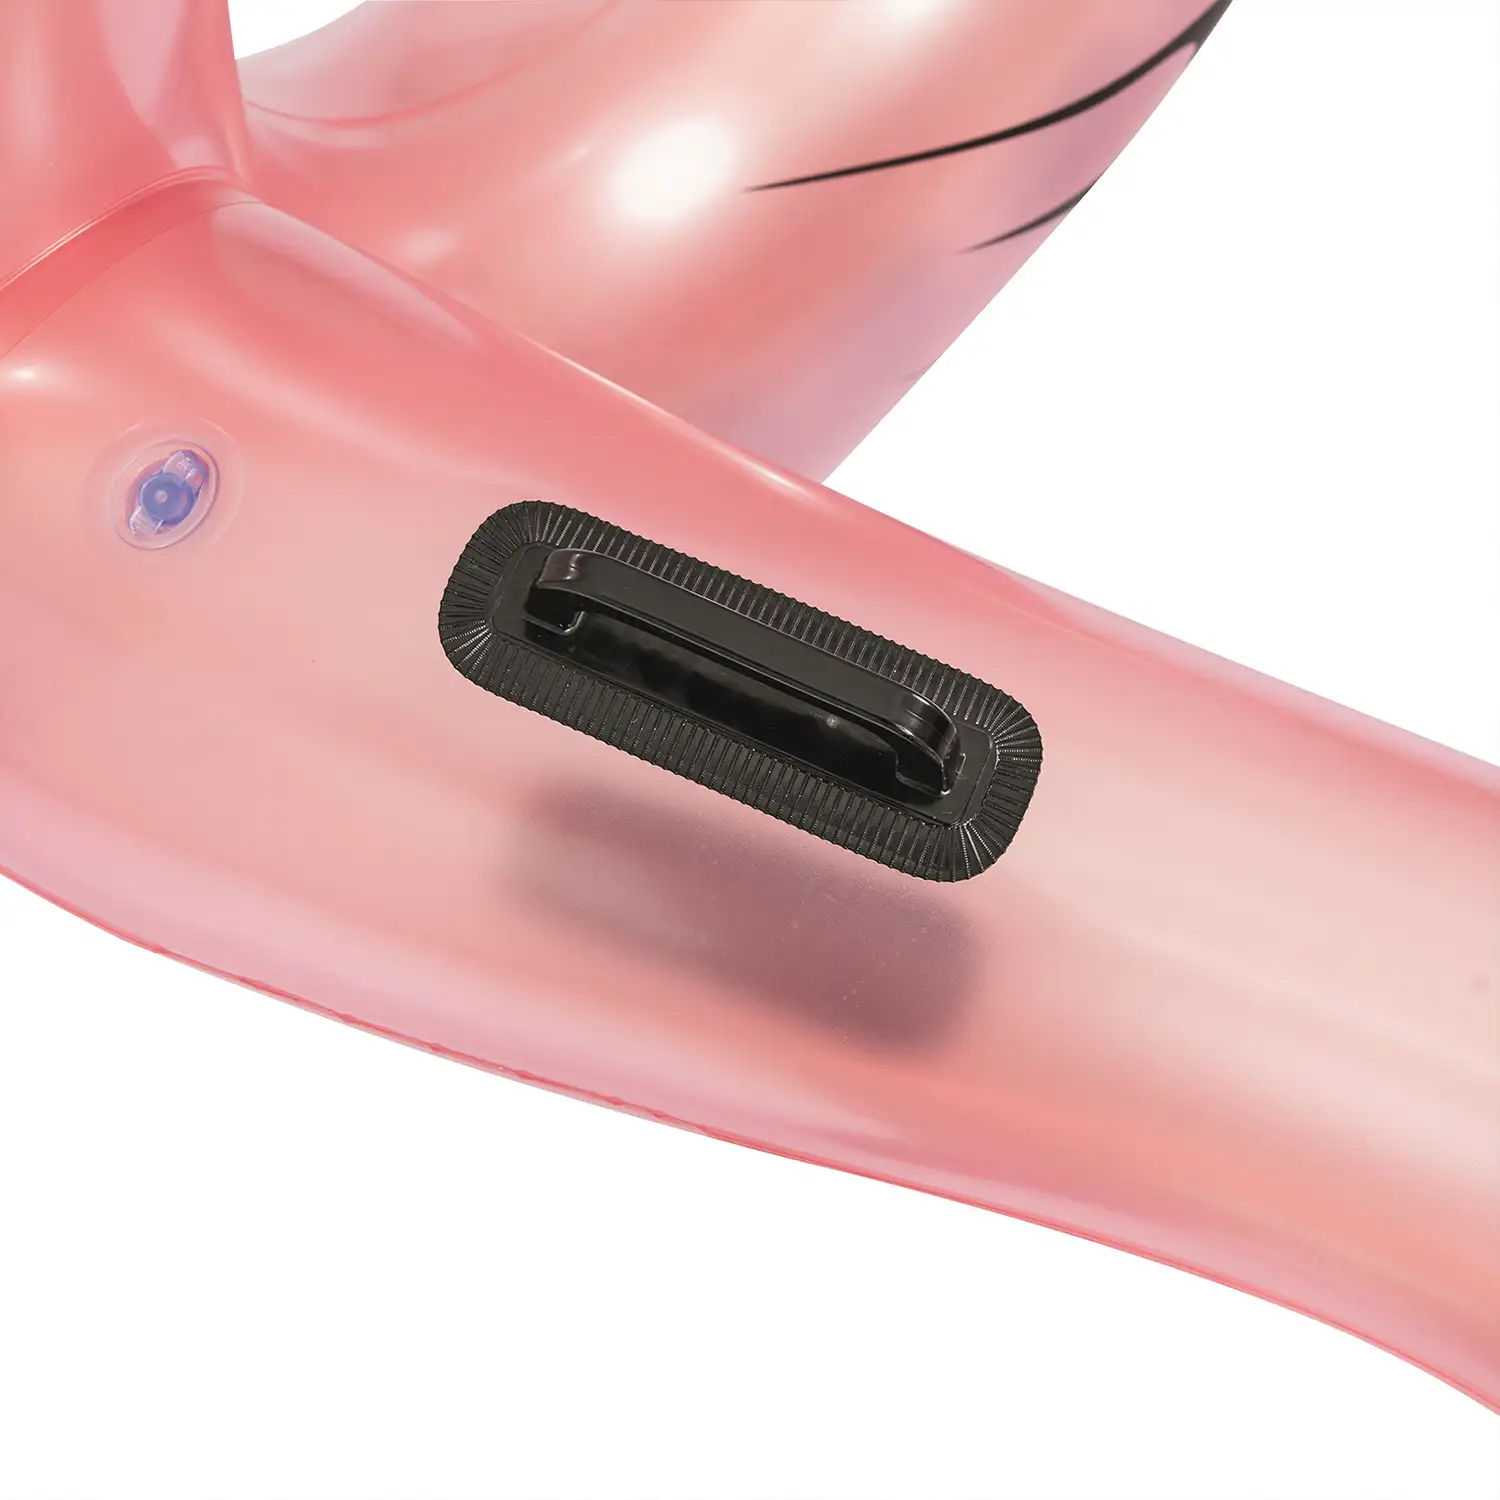 Flotador aro inflable Flamenco Bestway 165x117 cm. Diseños surtidos blanco y rosa.